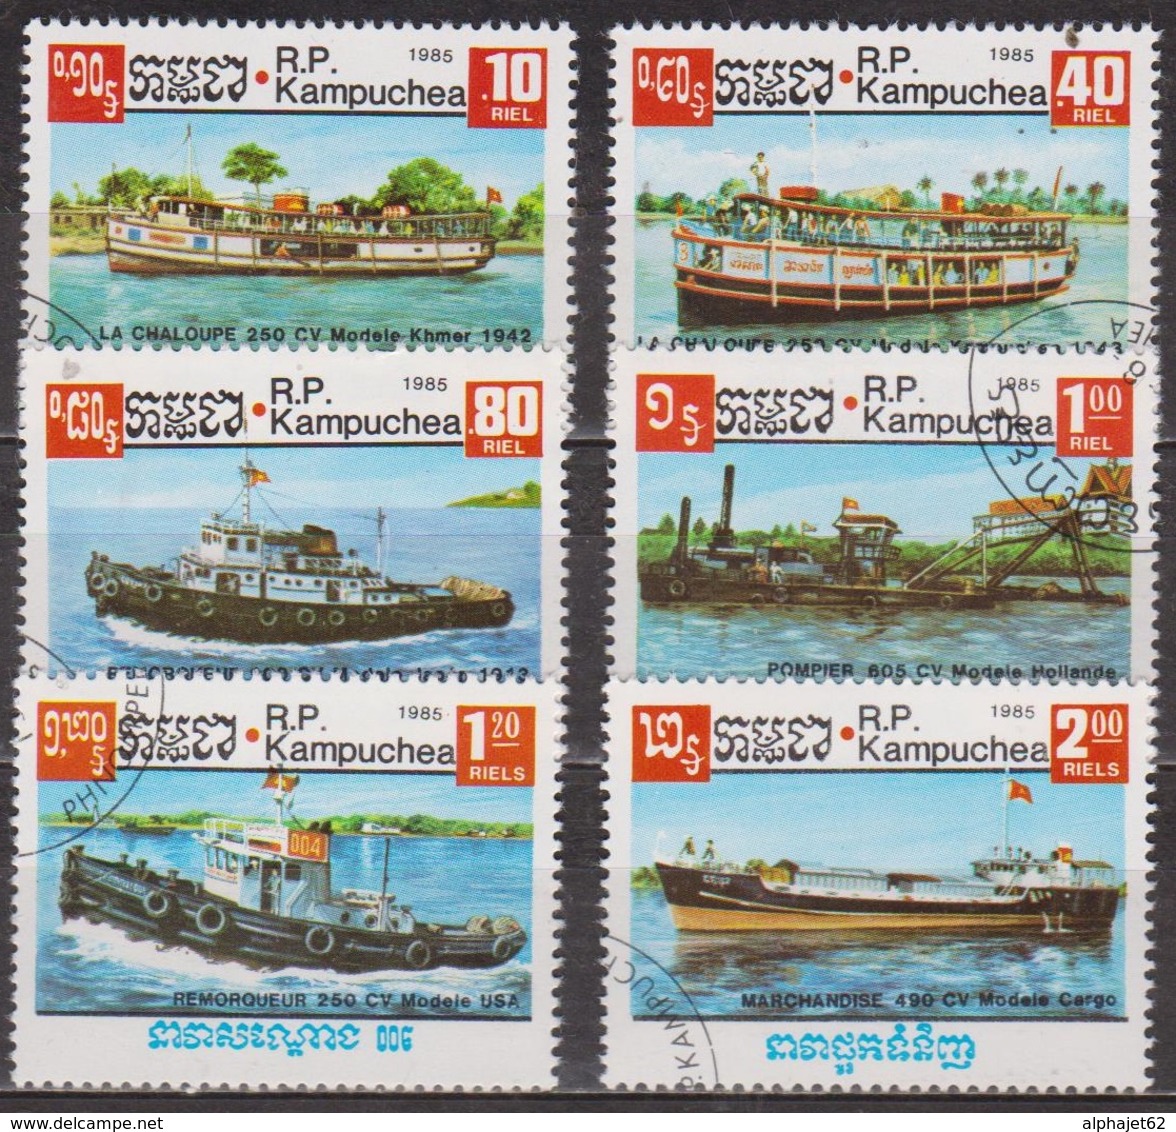 Bateaux Fluviaux - KAMPUCHEA - Chaloupe, Remorqueur, Bateau Pompe, Pétrolier, Cargo - N° 583 à 588 - 1985 - Kampuchea